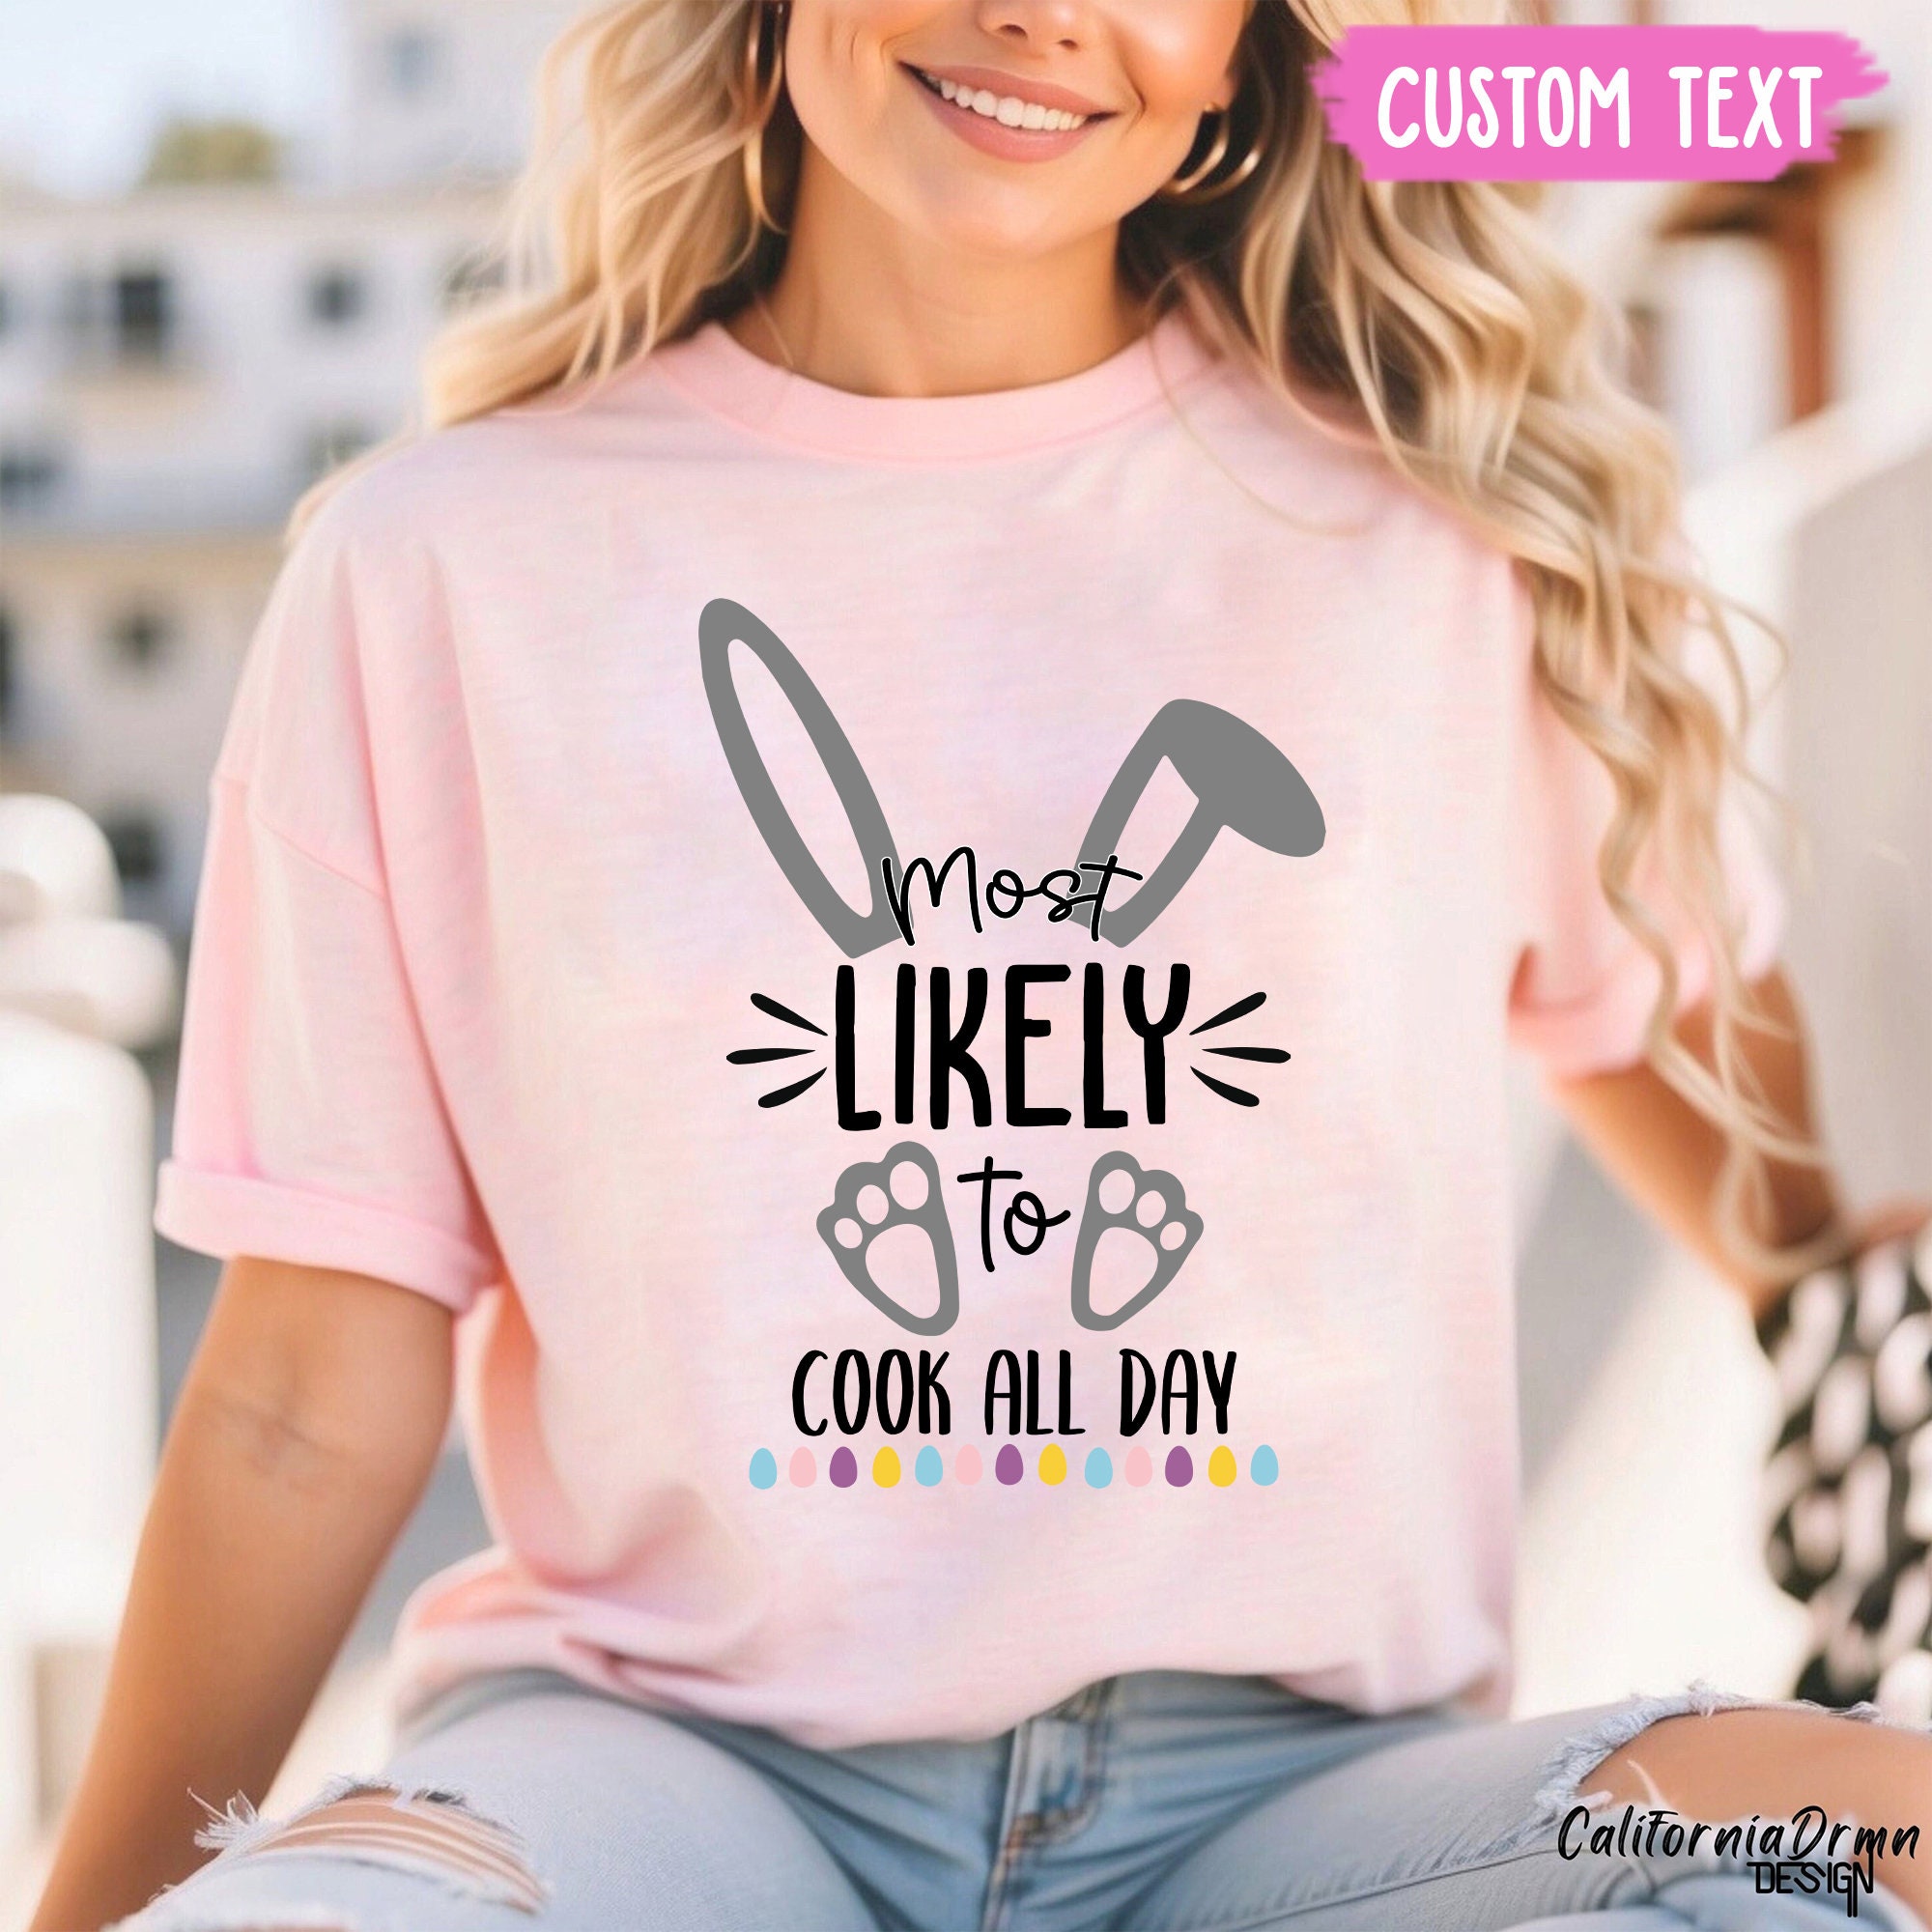 Custom Bunny style Family T-shirt